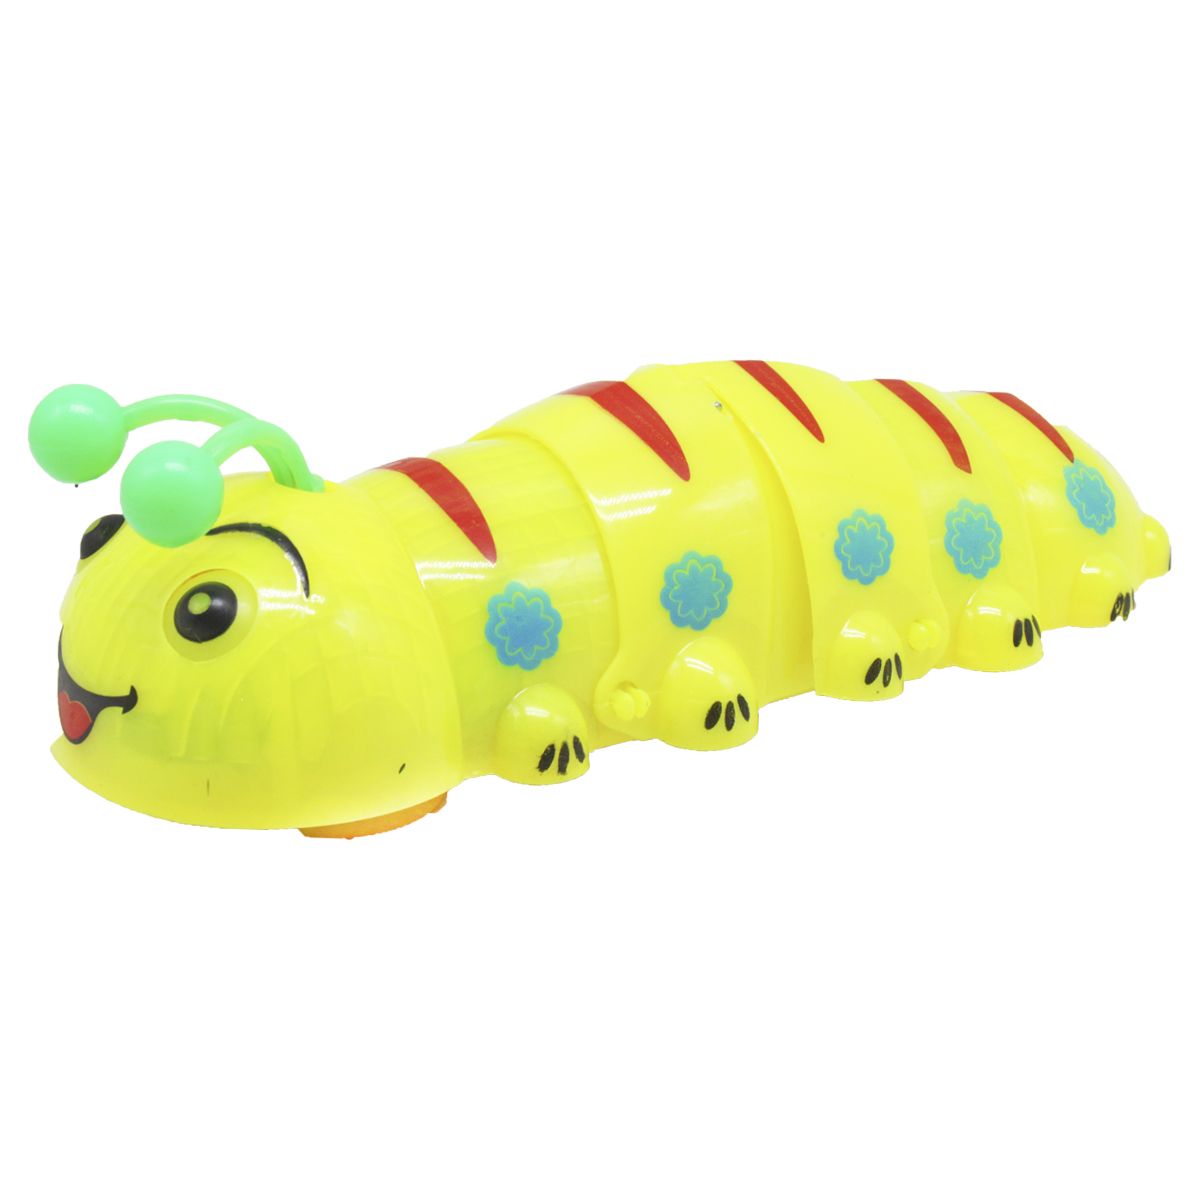 Музыкальная игрушка "Гусеница" (25 см), желтая